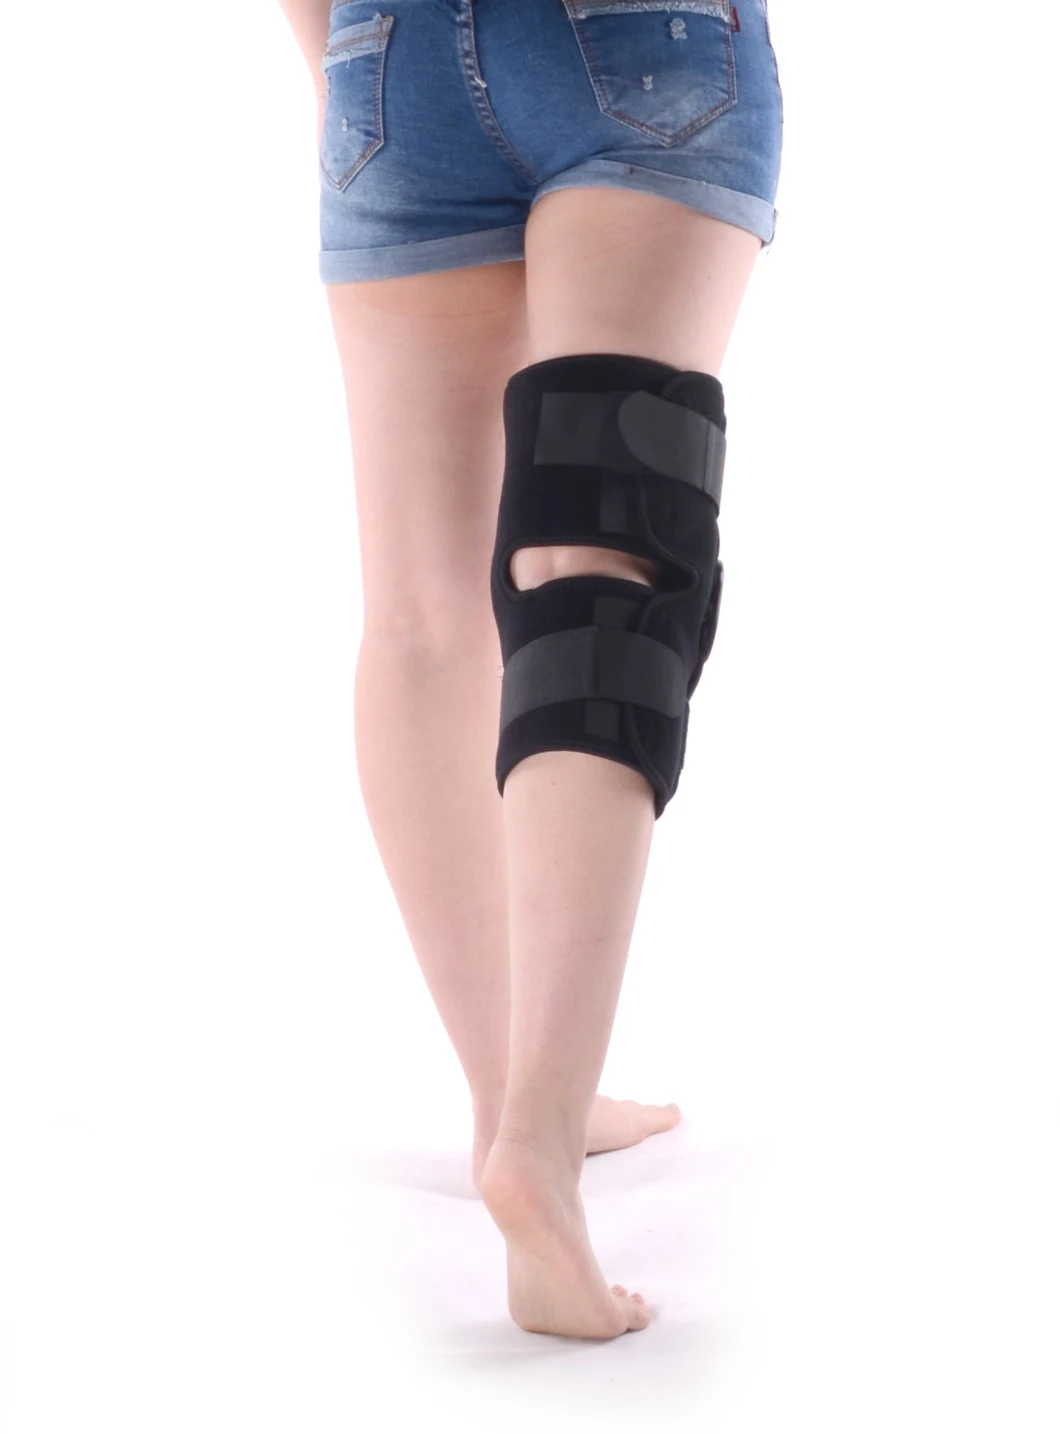 New Style Orthopedic Post-Operative Adjustable ROM Knee Brace